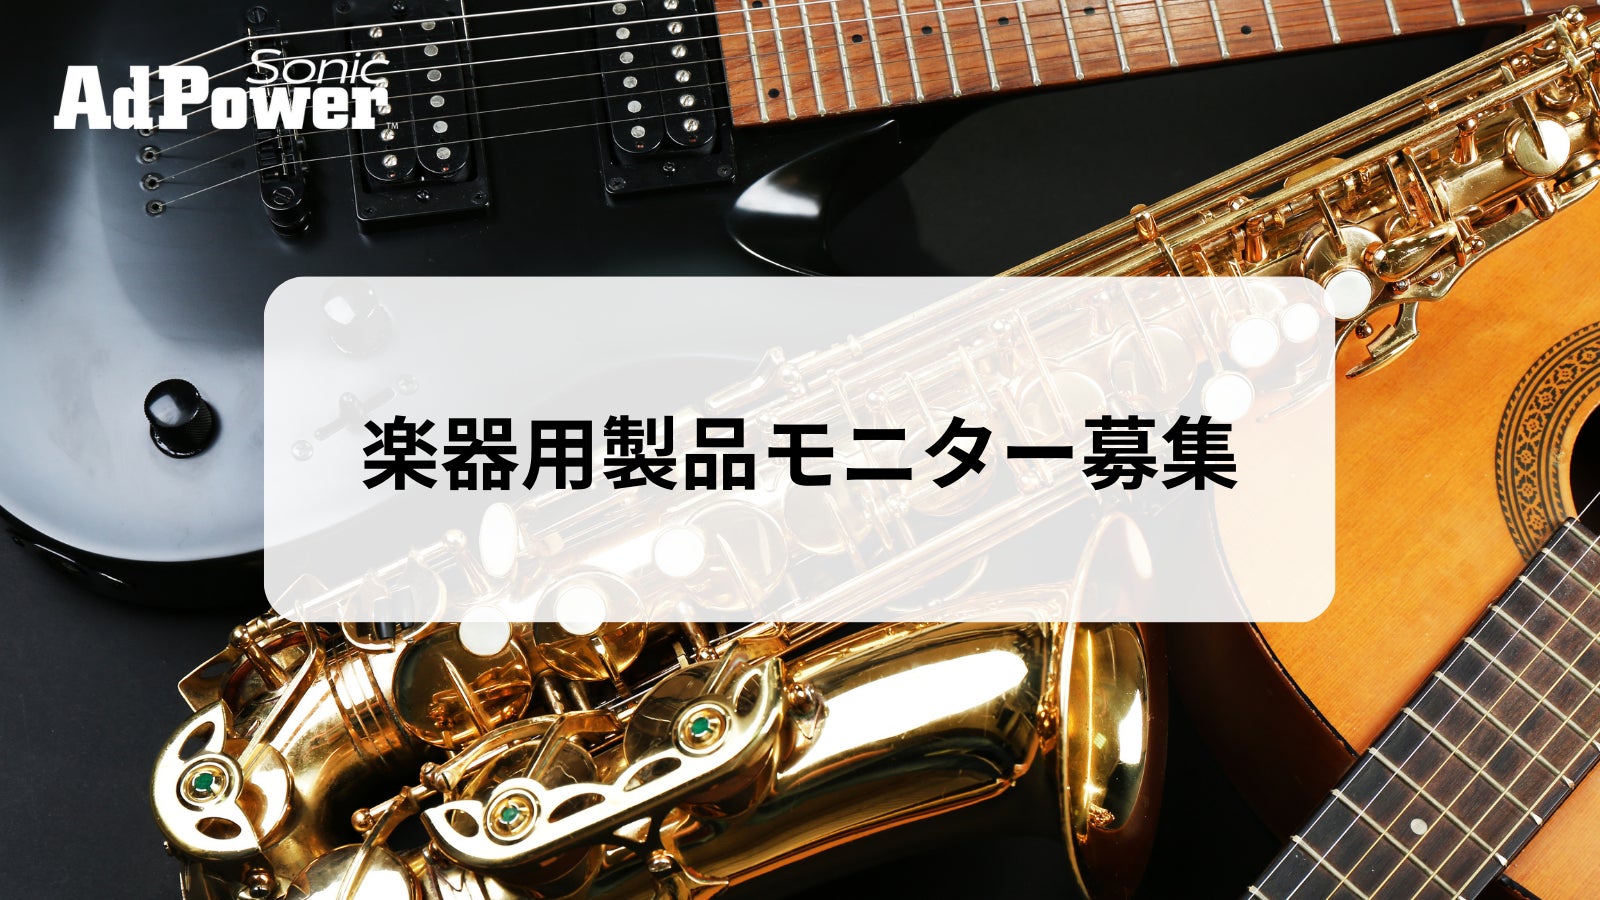 【モニター募集】〜アドパワー・ソニック〜 楽器用シリーズ製品モニターの募集開始